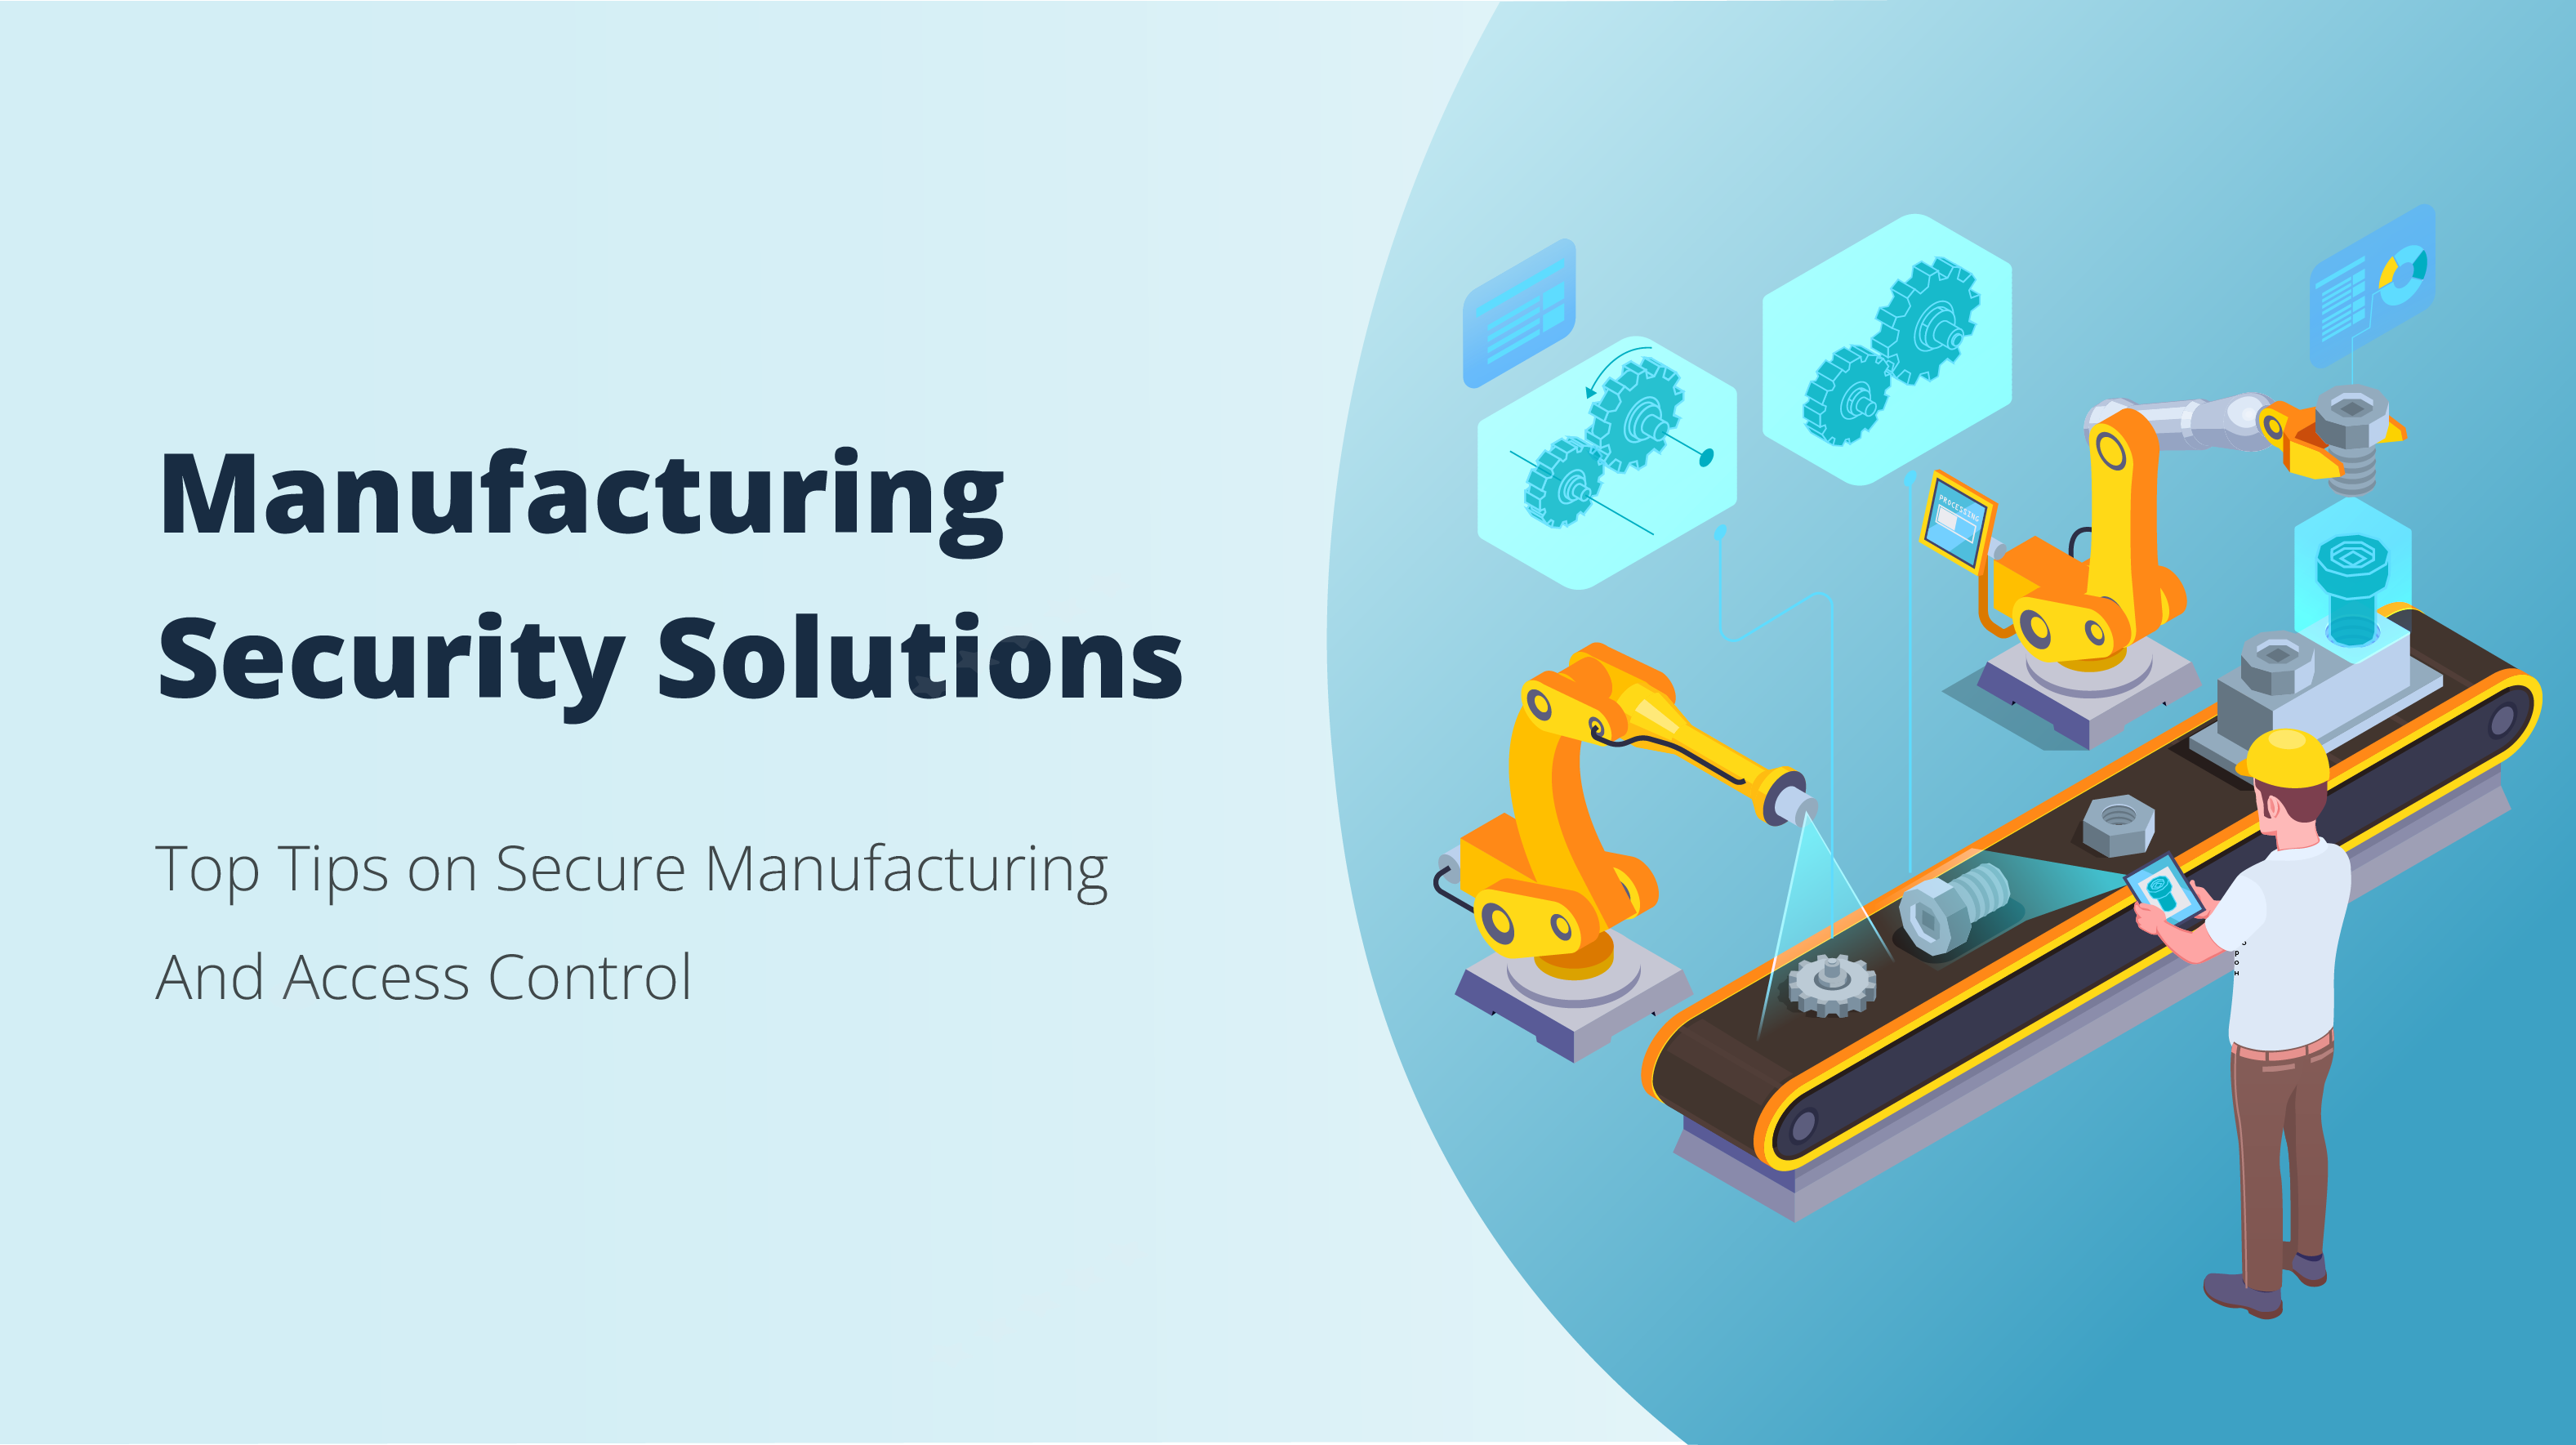 <b>Manufacturing Security Solutions: Principales consejos sobre seguridad en la fabricación y control de acceso</b>